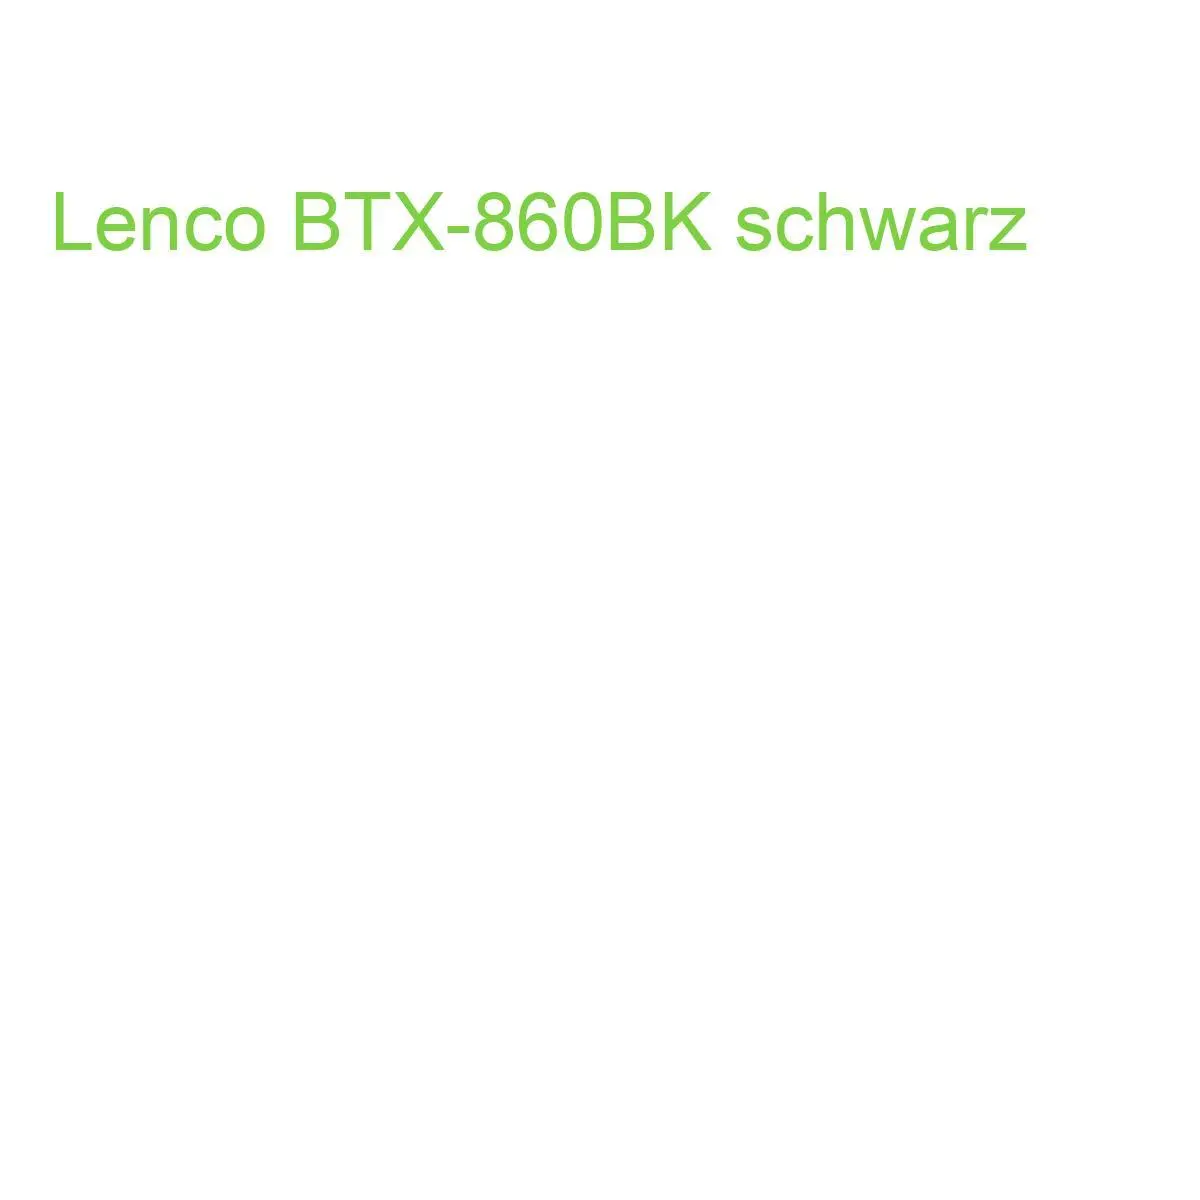 Lenco BTX-860BK schwarz (8711902040514) | eBay